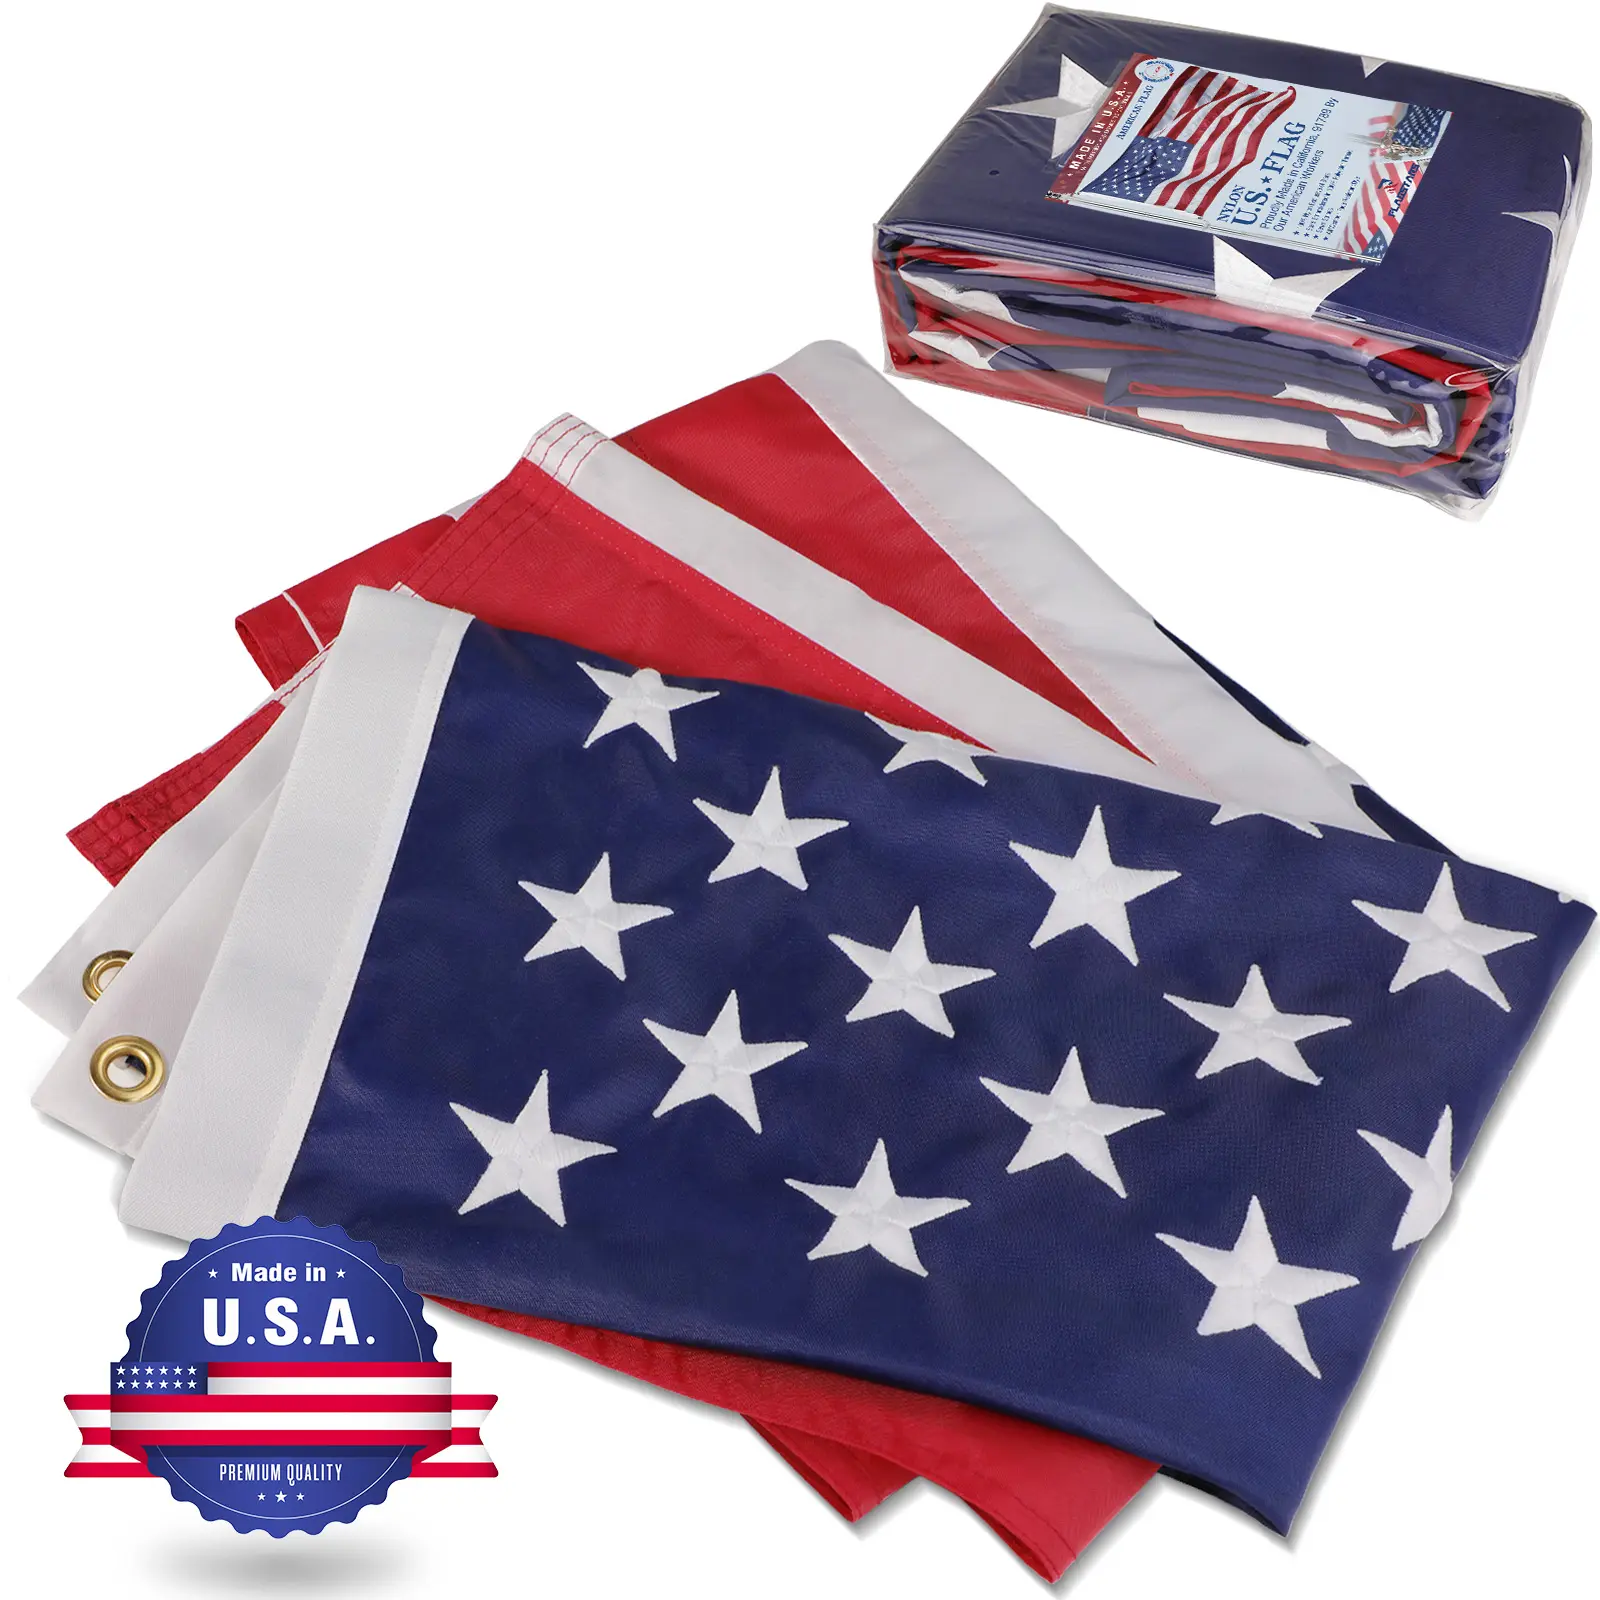 Bandiera americana all'ingrosso diretta in fabbrica bandiera americana 2.5ft x 4ft bandiera in Nylon con occhielli con stelle ricamate realizzati negli stati uniti